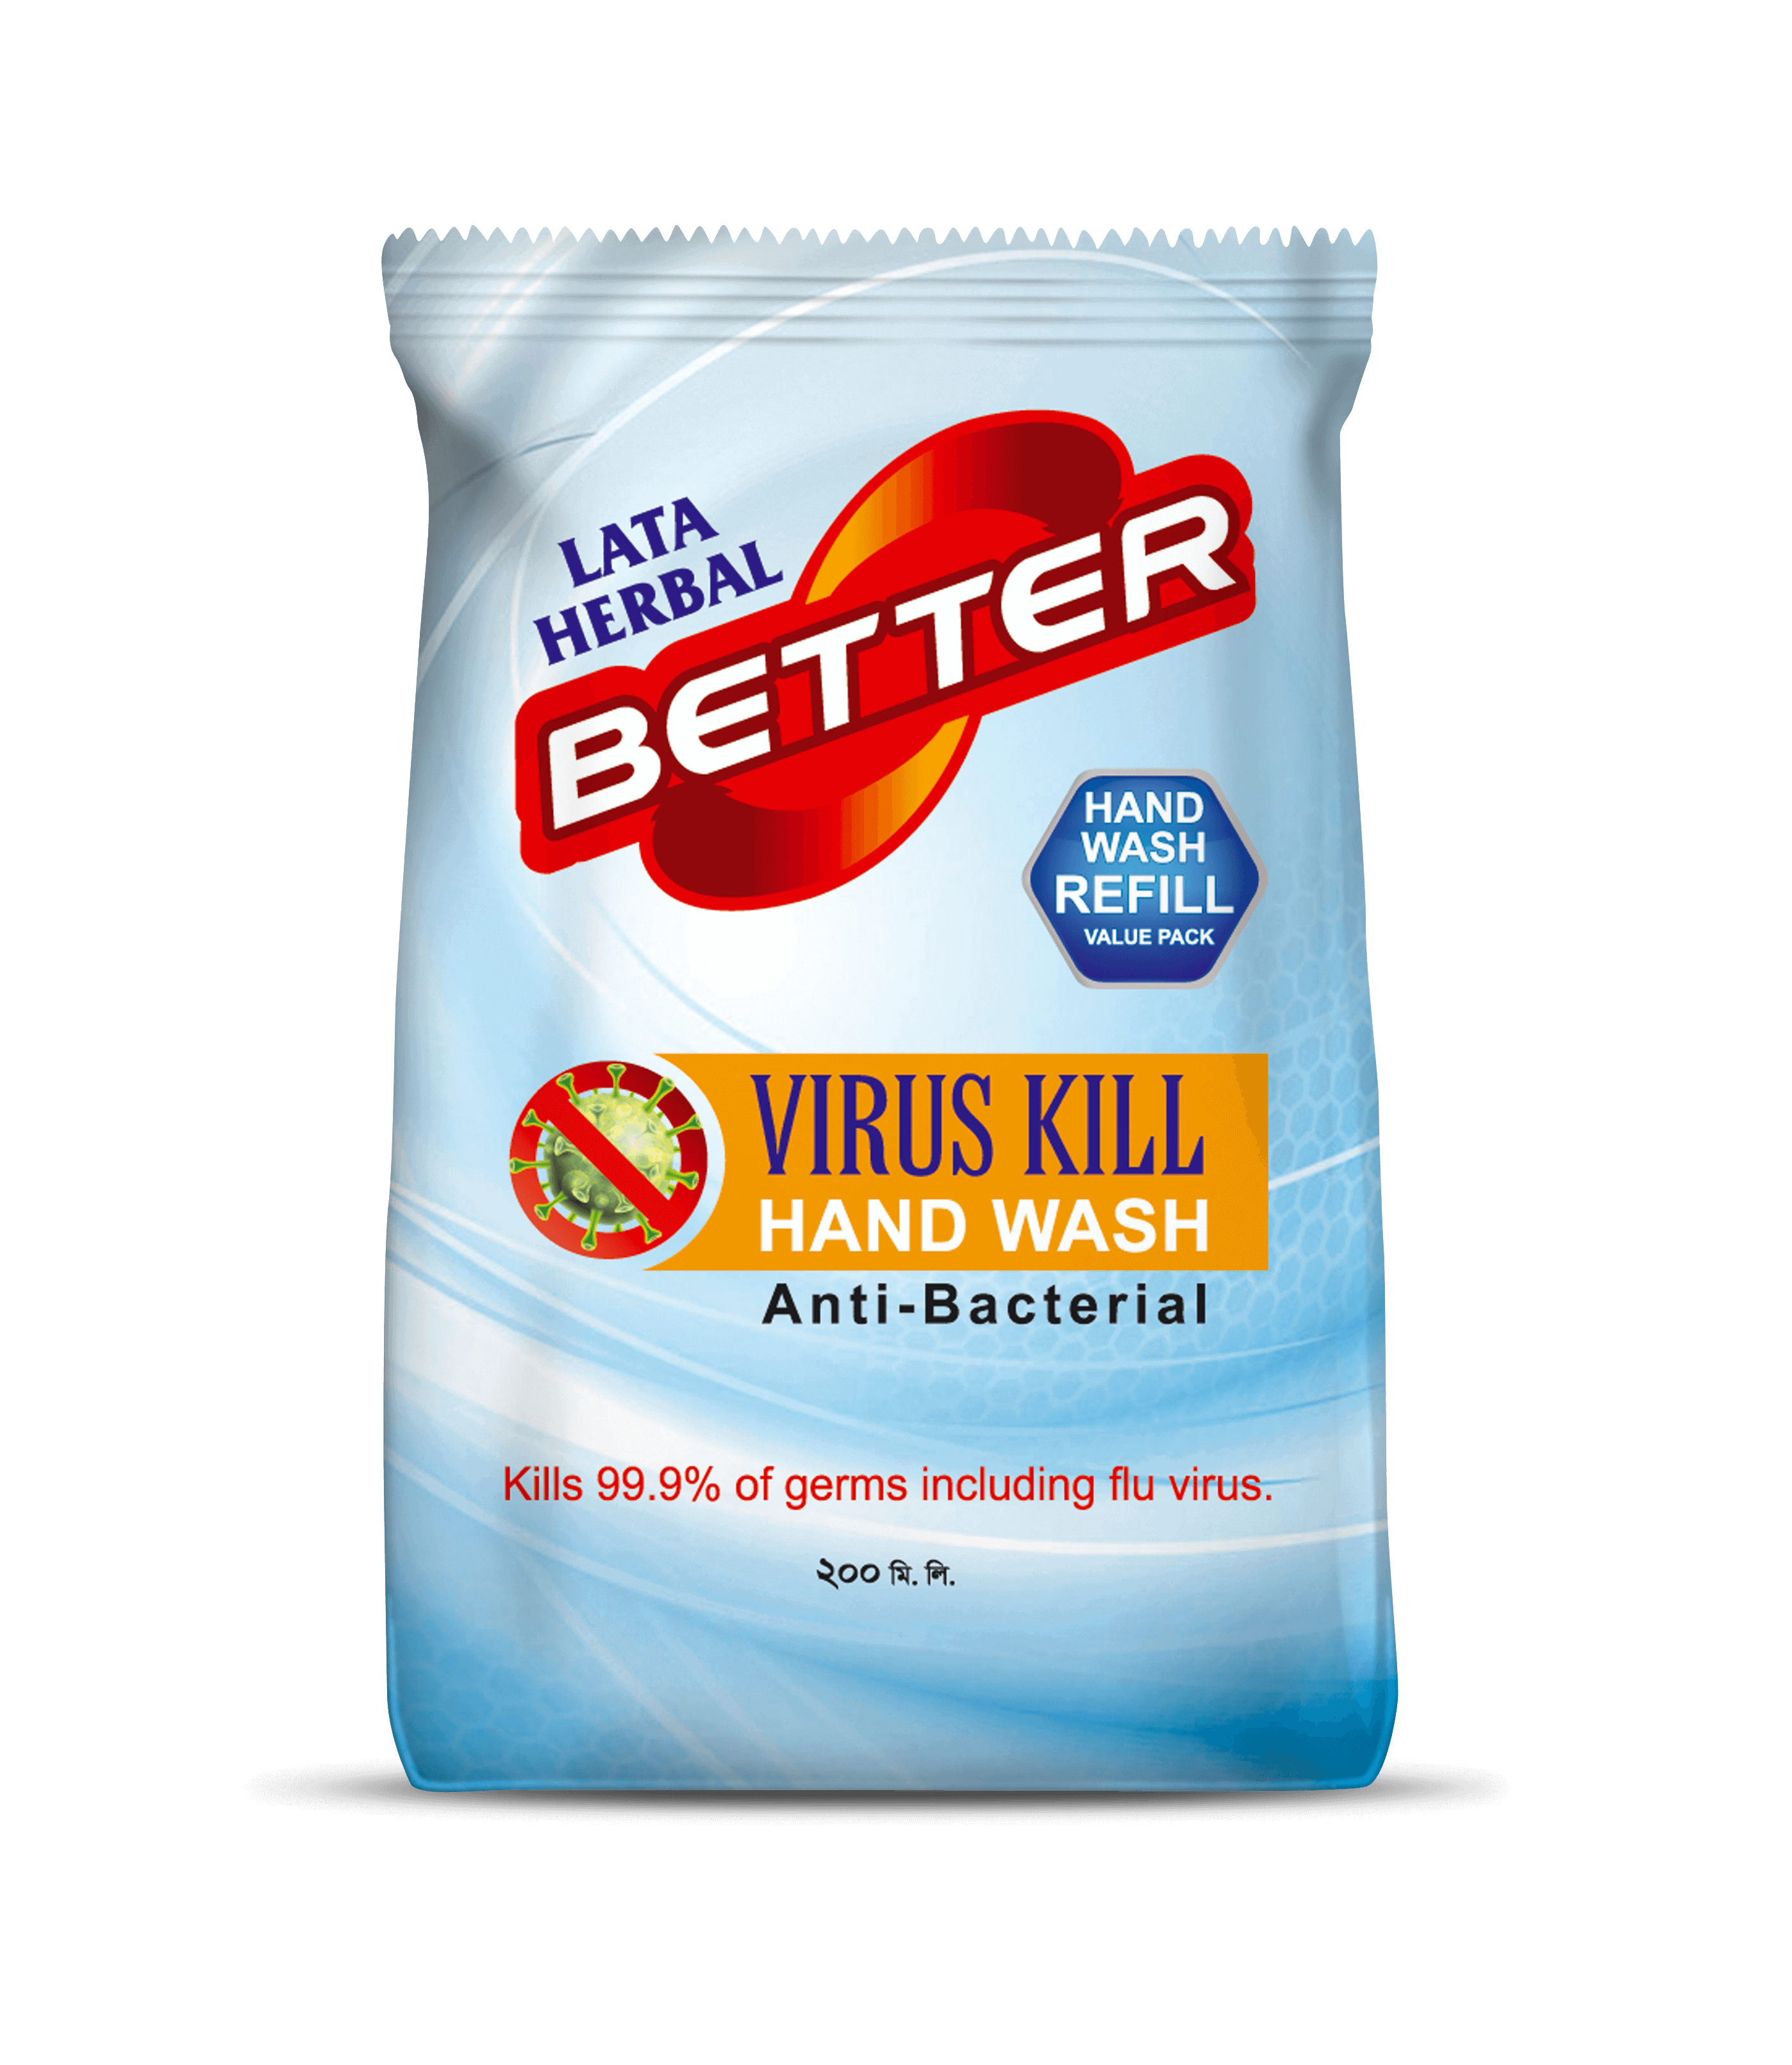 Virus Kill Hand Wash Refill